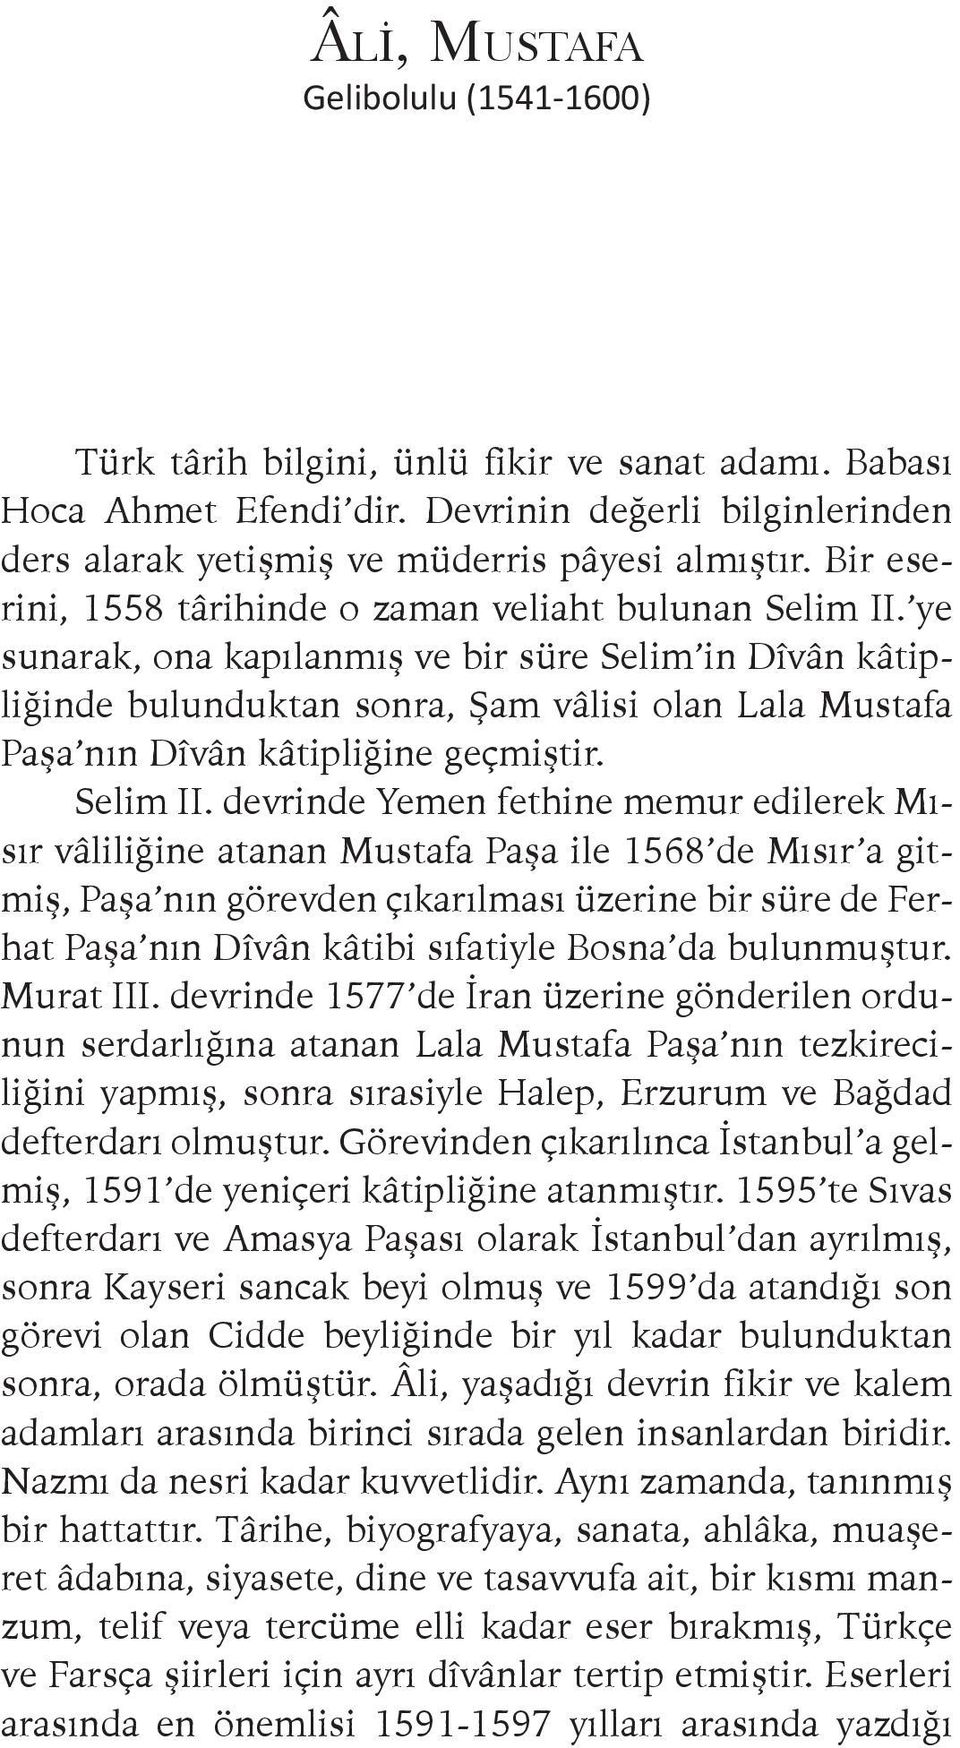 ye sunarak, ona kapılanmış ve bir süre Selim in Dîvân kâtipliğinde bulunduktan sonra, Şam vâlisi olan Lala Mustafa Paşa nın Dîvân kâtipliğine geçmiştir. Selim II.